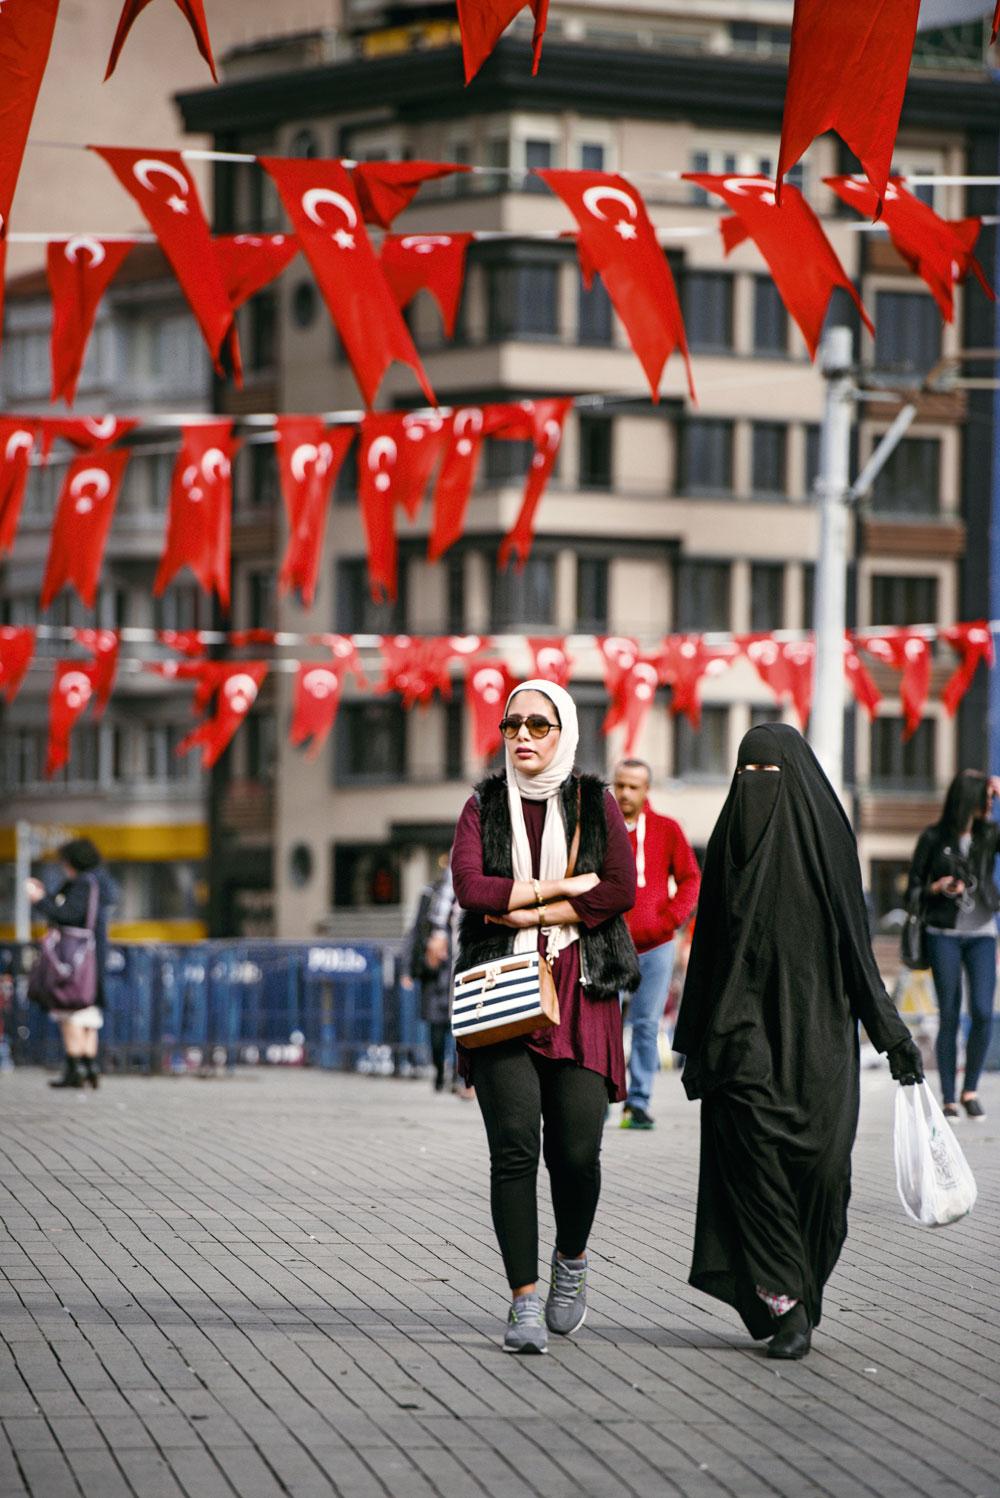 'Erdogan is het land heus niet aan het islamiseren.'